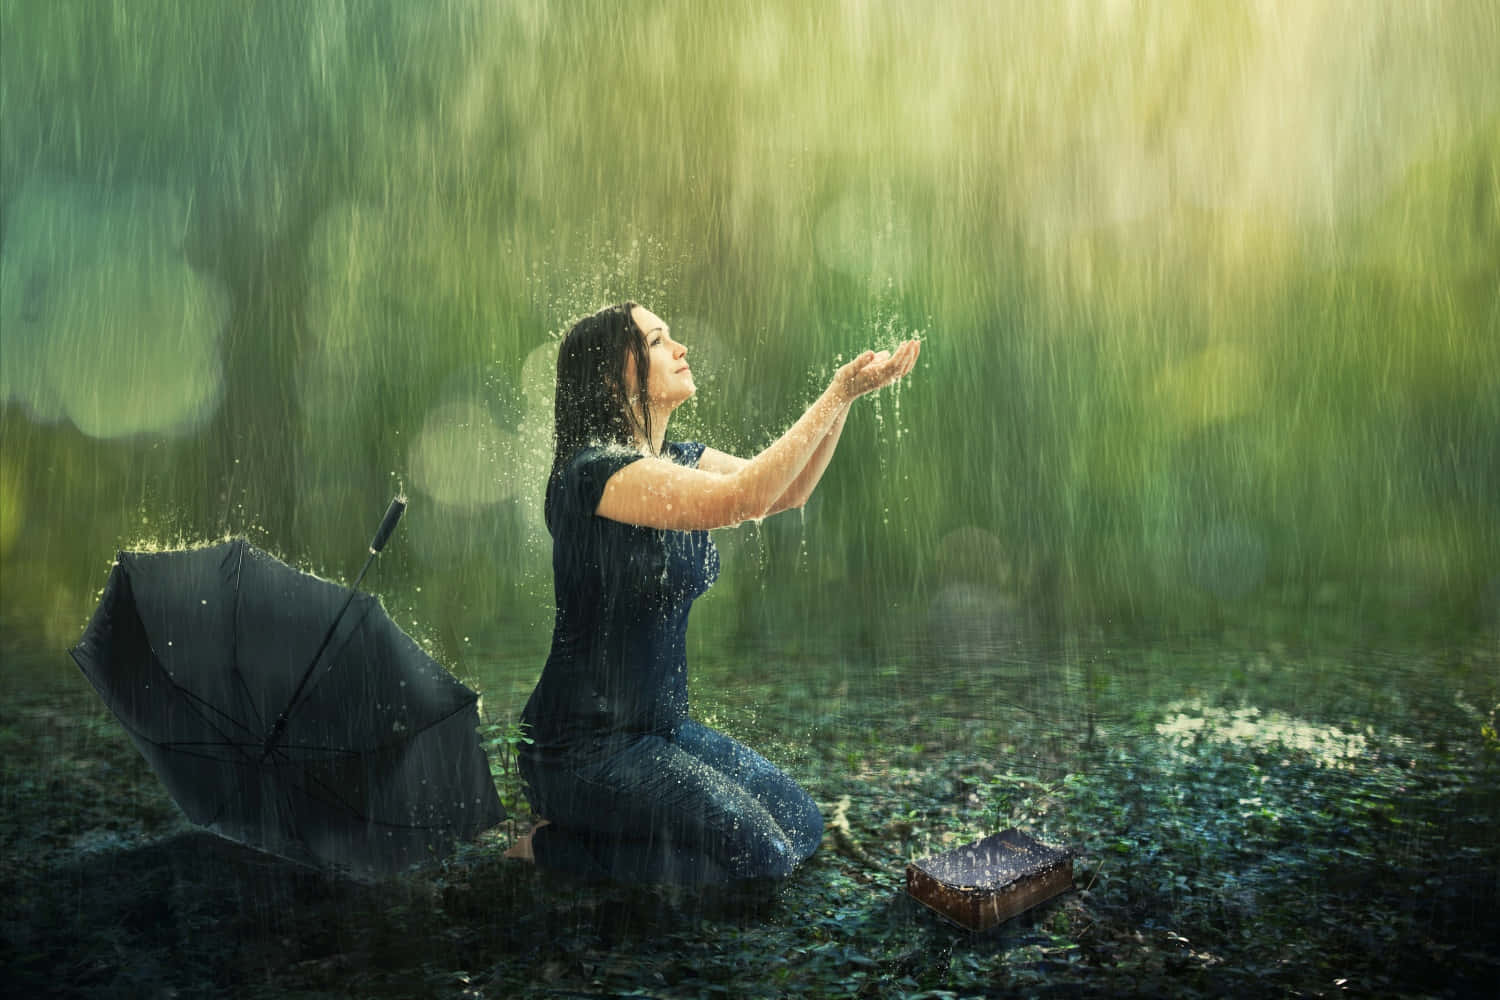 Enkvinde Der Knæler Ned I Regnen Med En Paraply